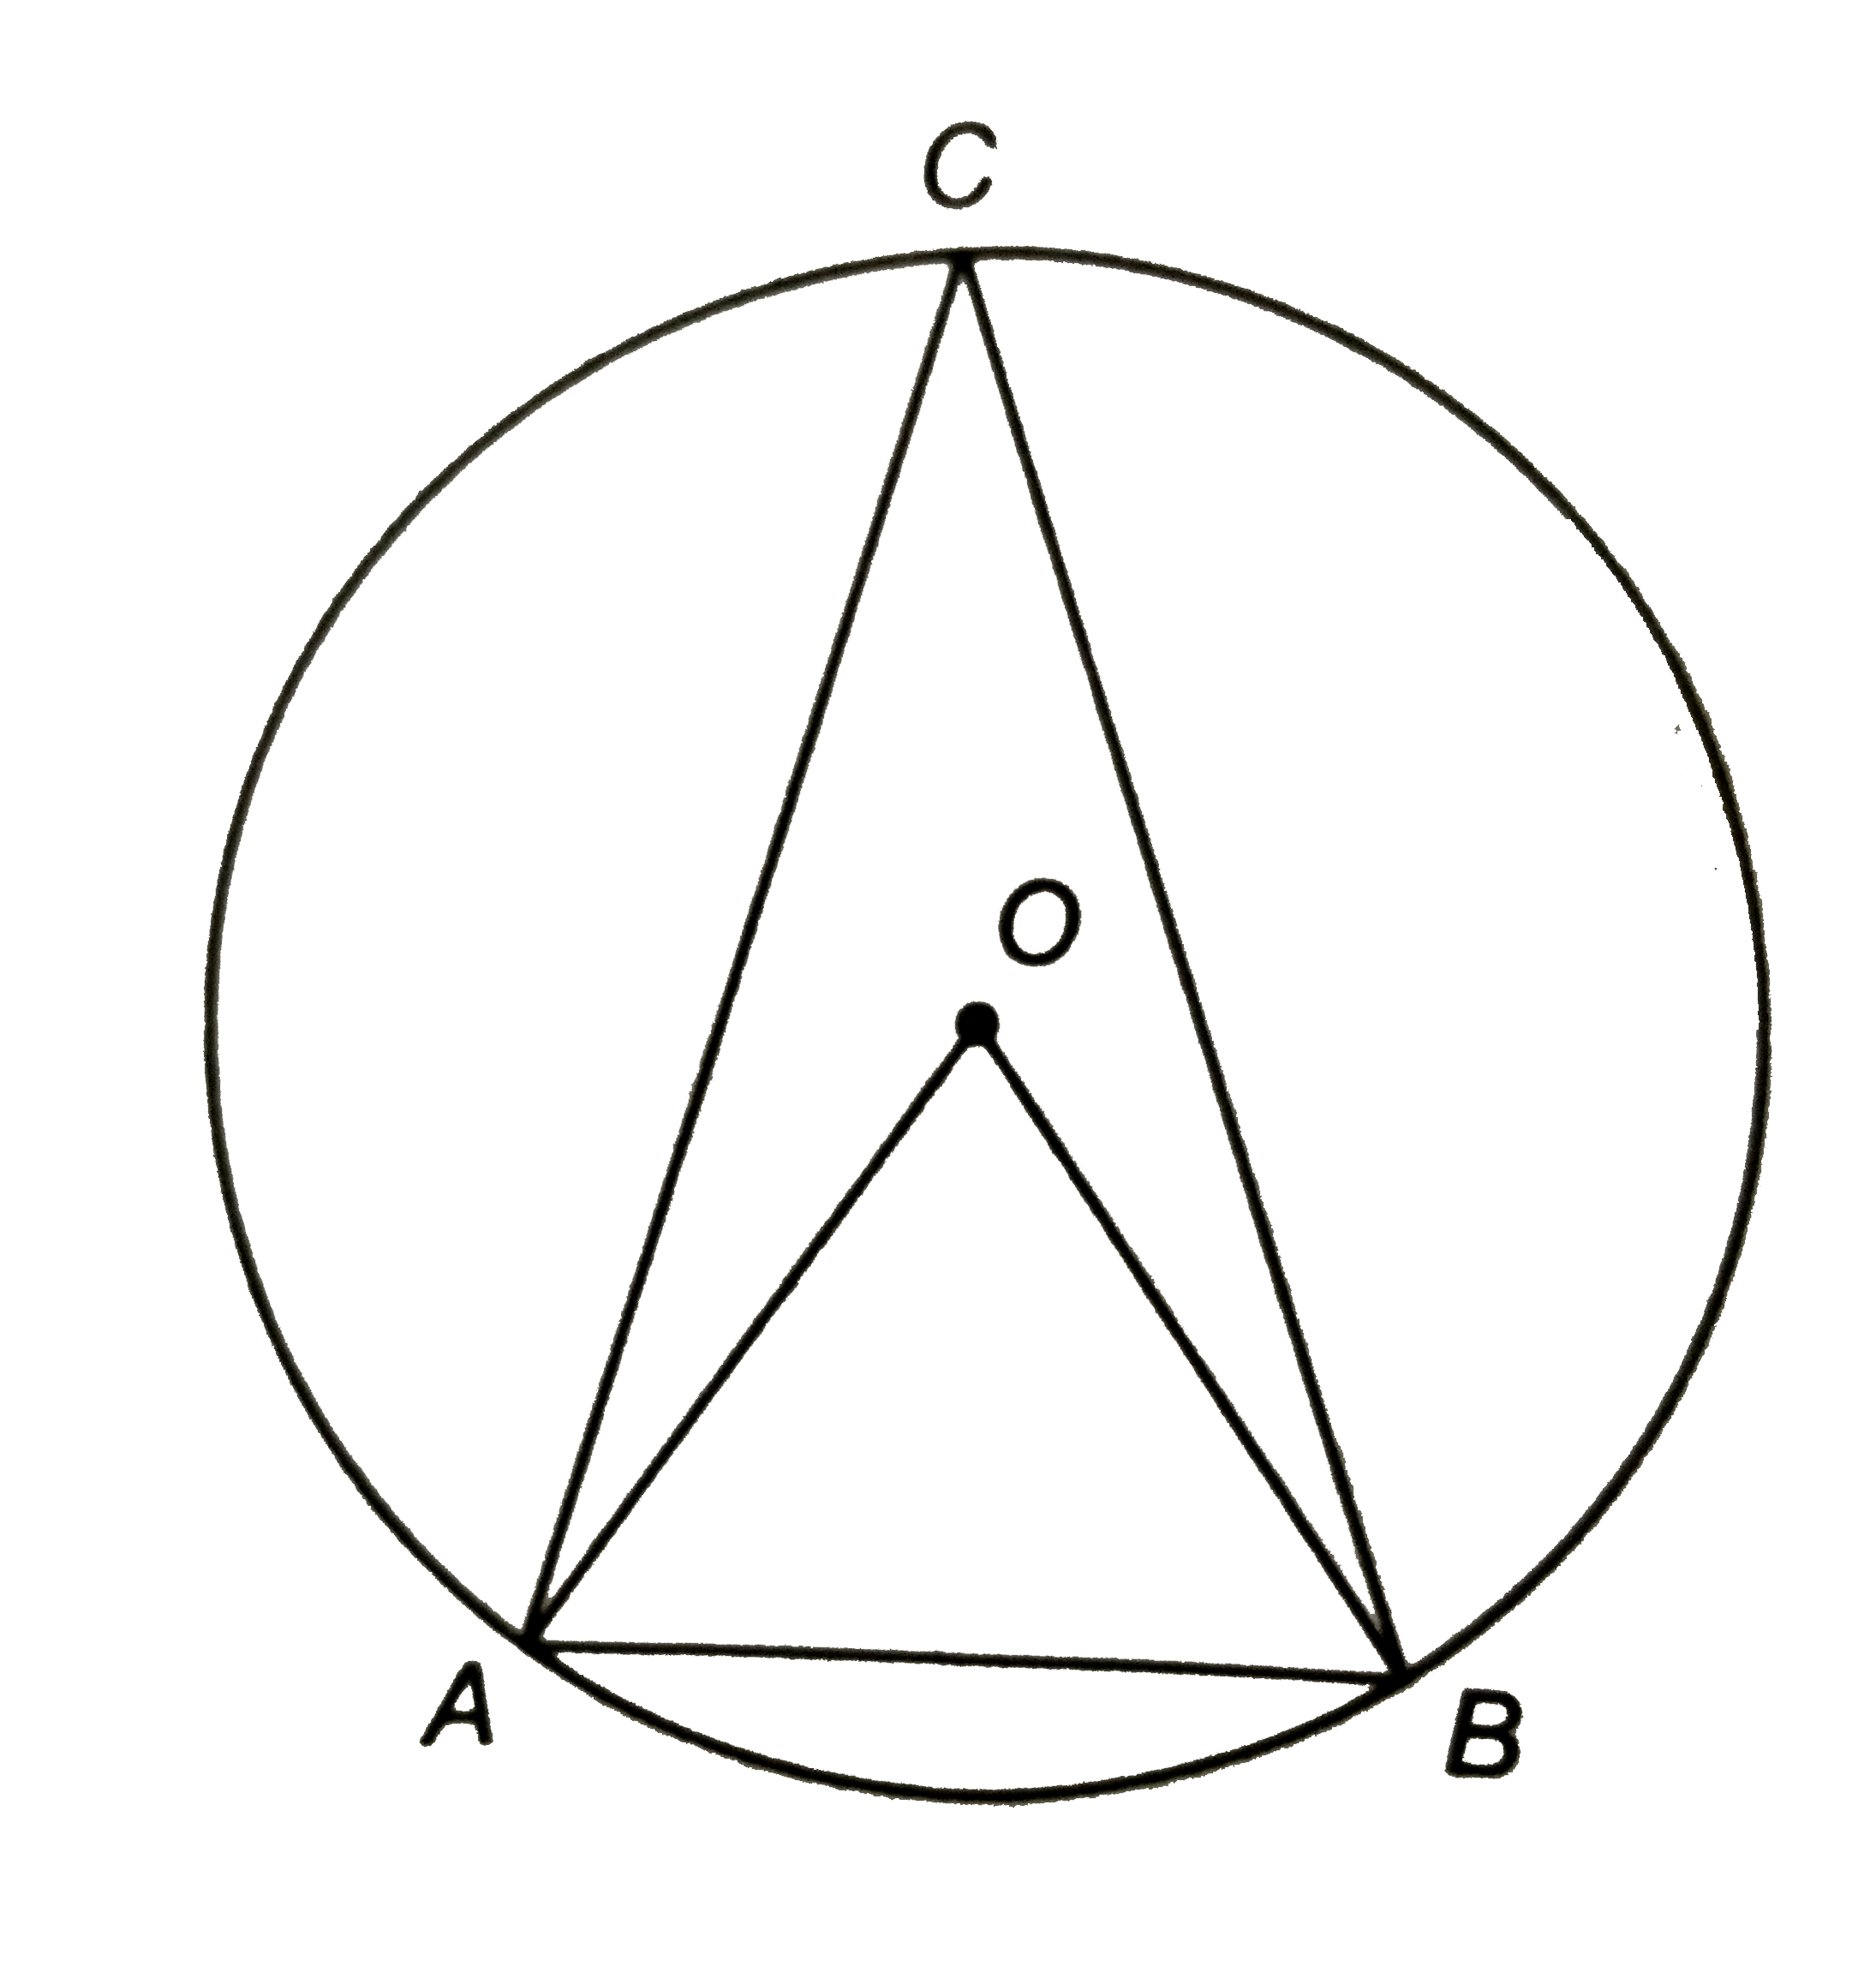 संलग्न चित्र में, 'O' वृत्त का केन्द्र है | यदि जीवा AB = 2 सेमी और वृत्त की त्रिज्या OA = 2 सेमी है तो angleACB का मान ज्ञात कीजिए |